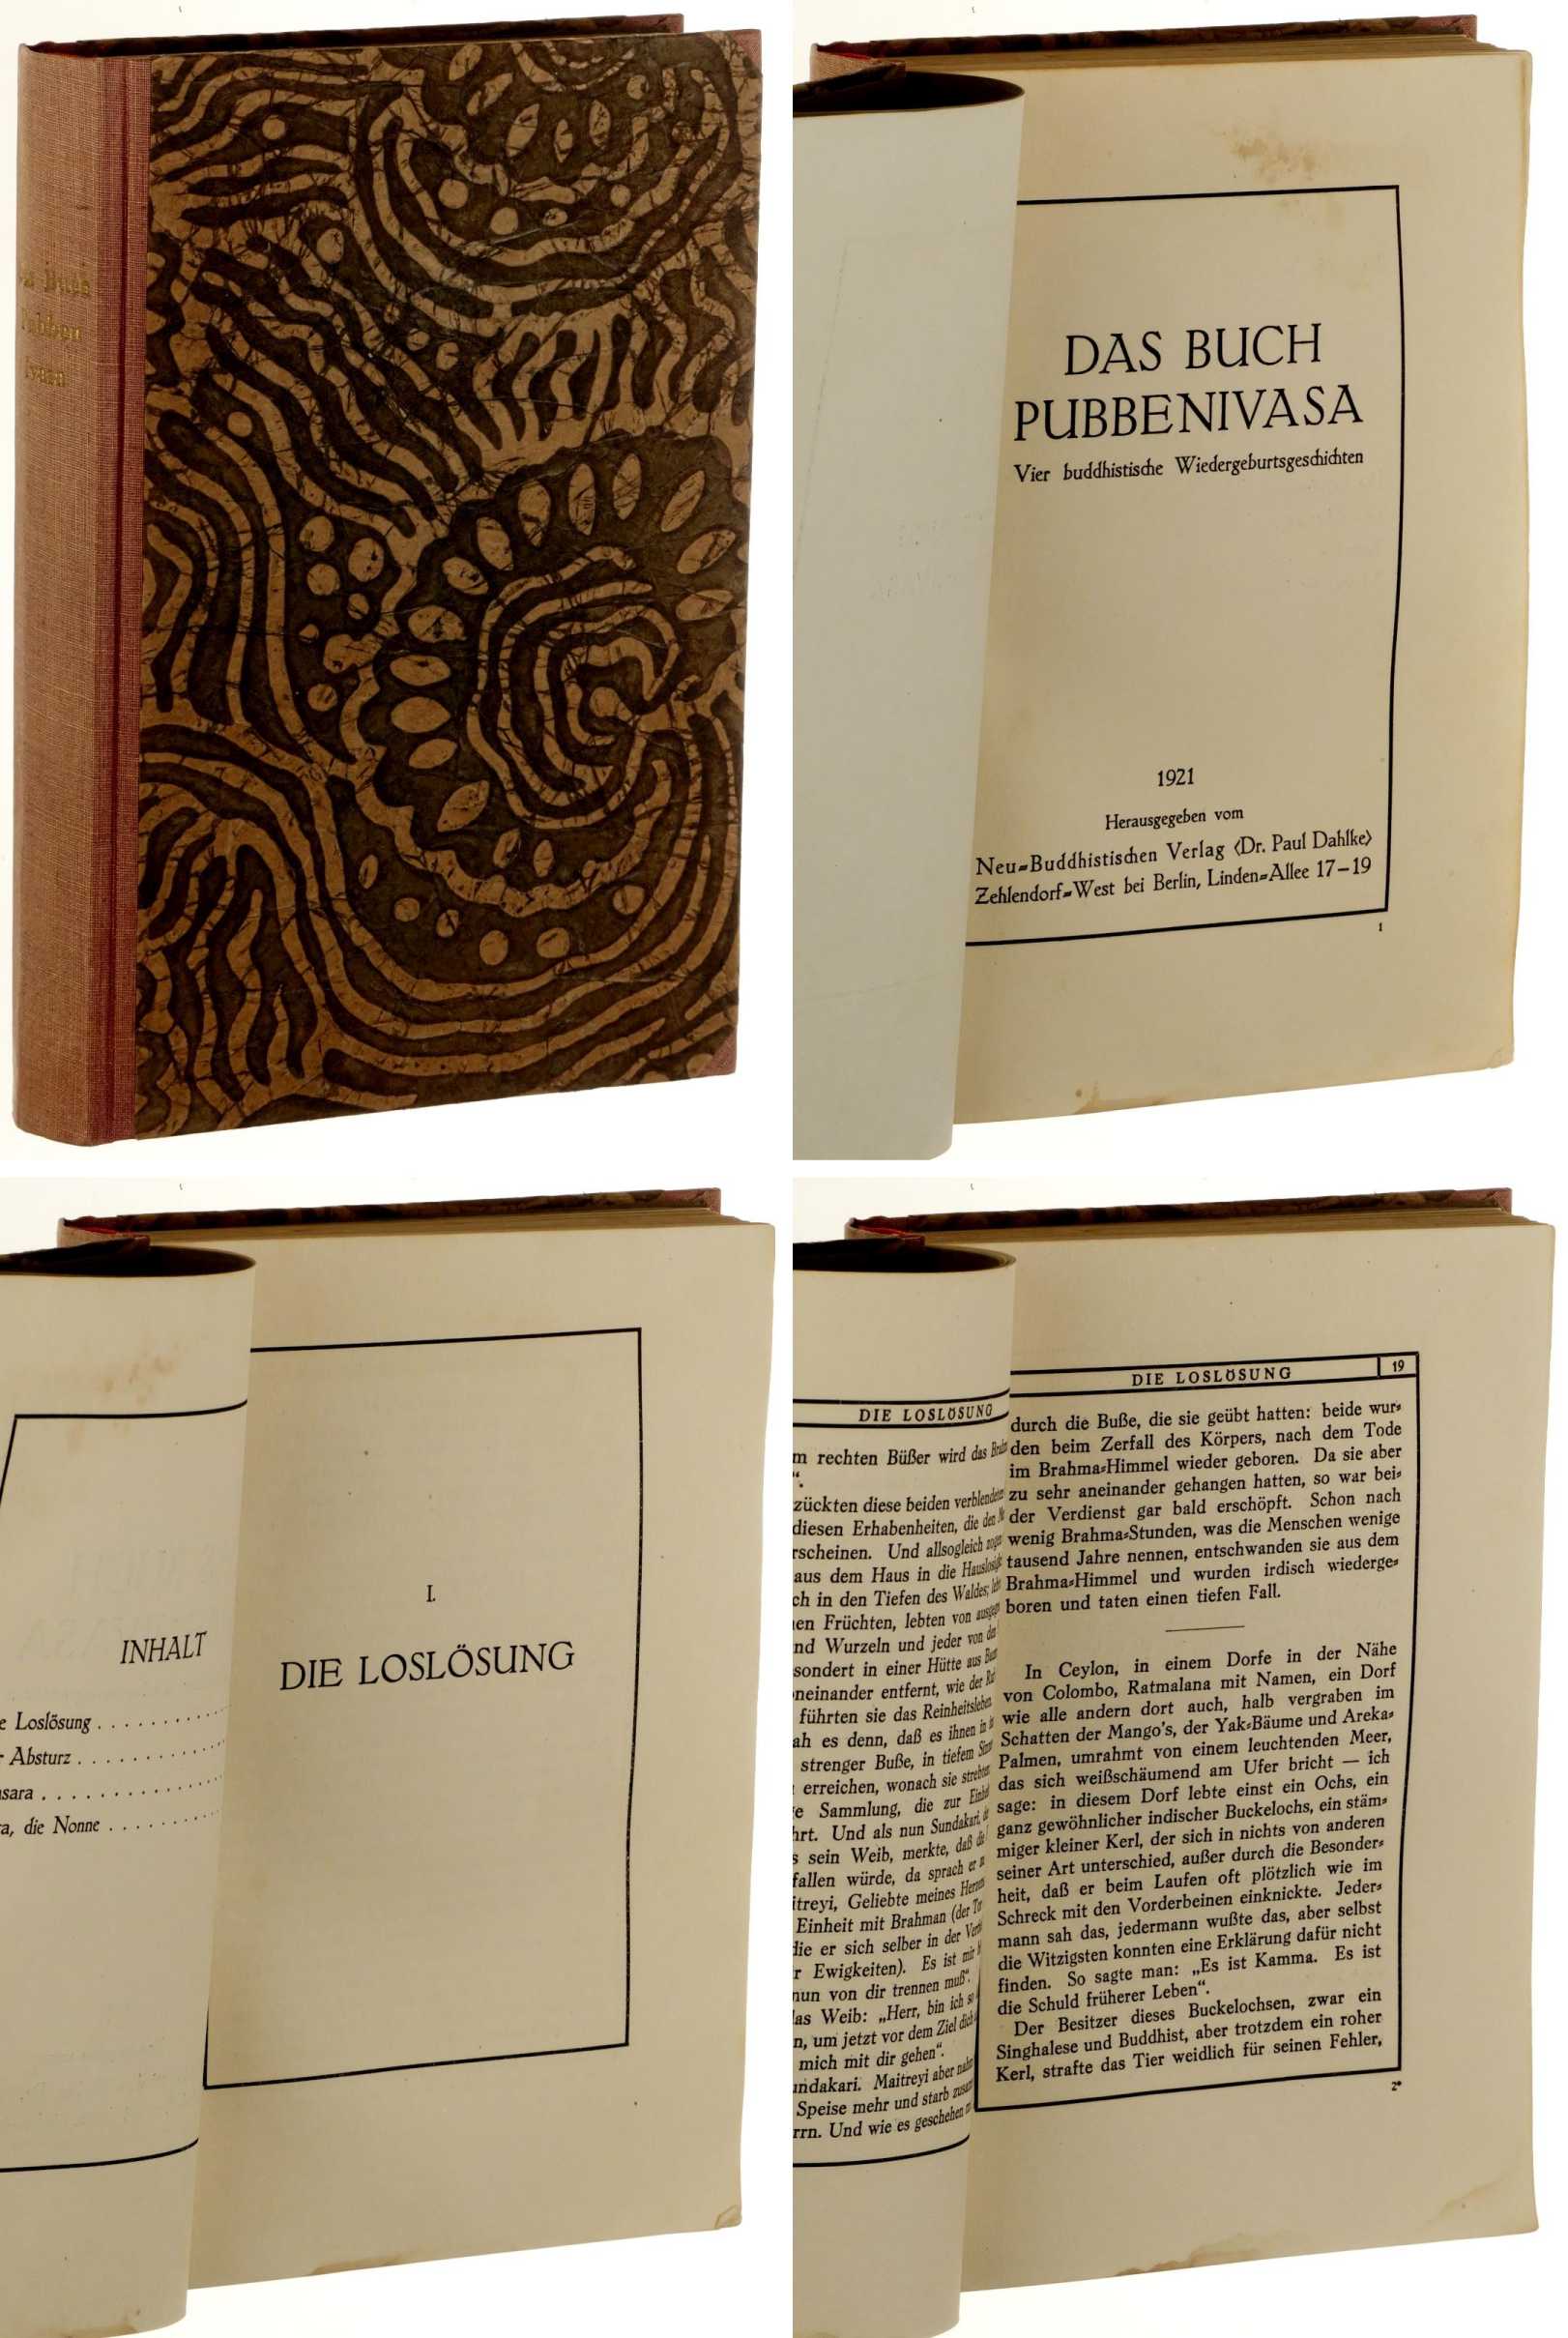   Das Buch Pubbenivasa. Vier buddhistische Wiedergeburtsgeschichten. 